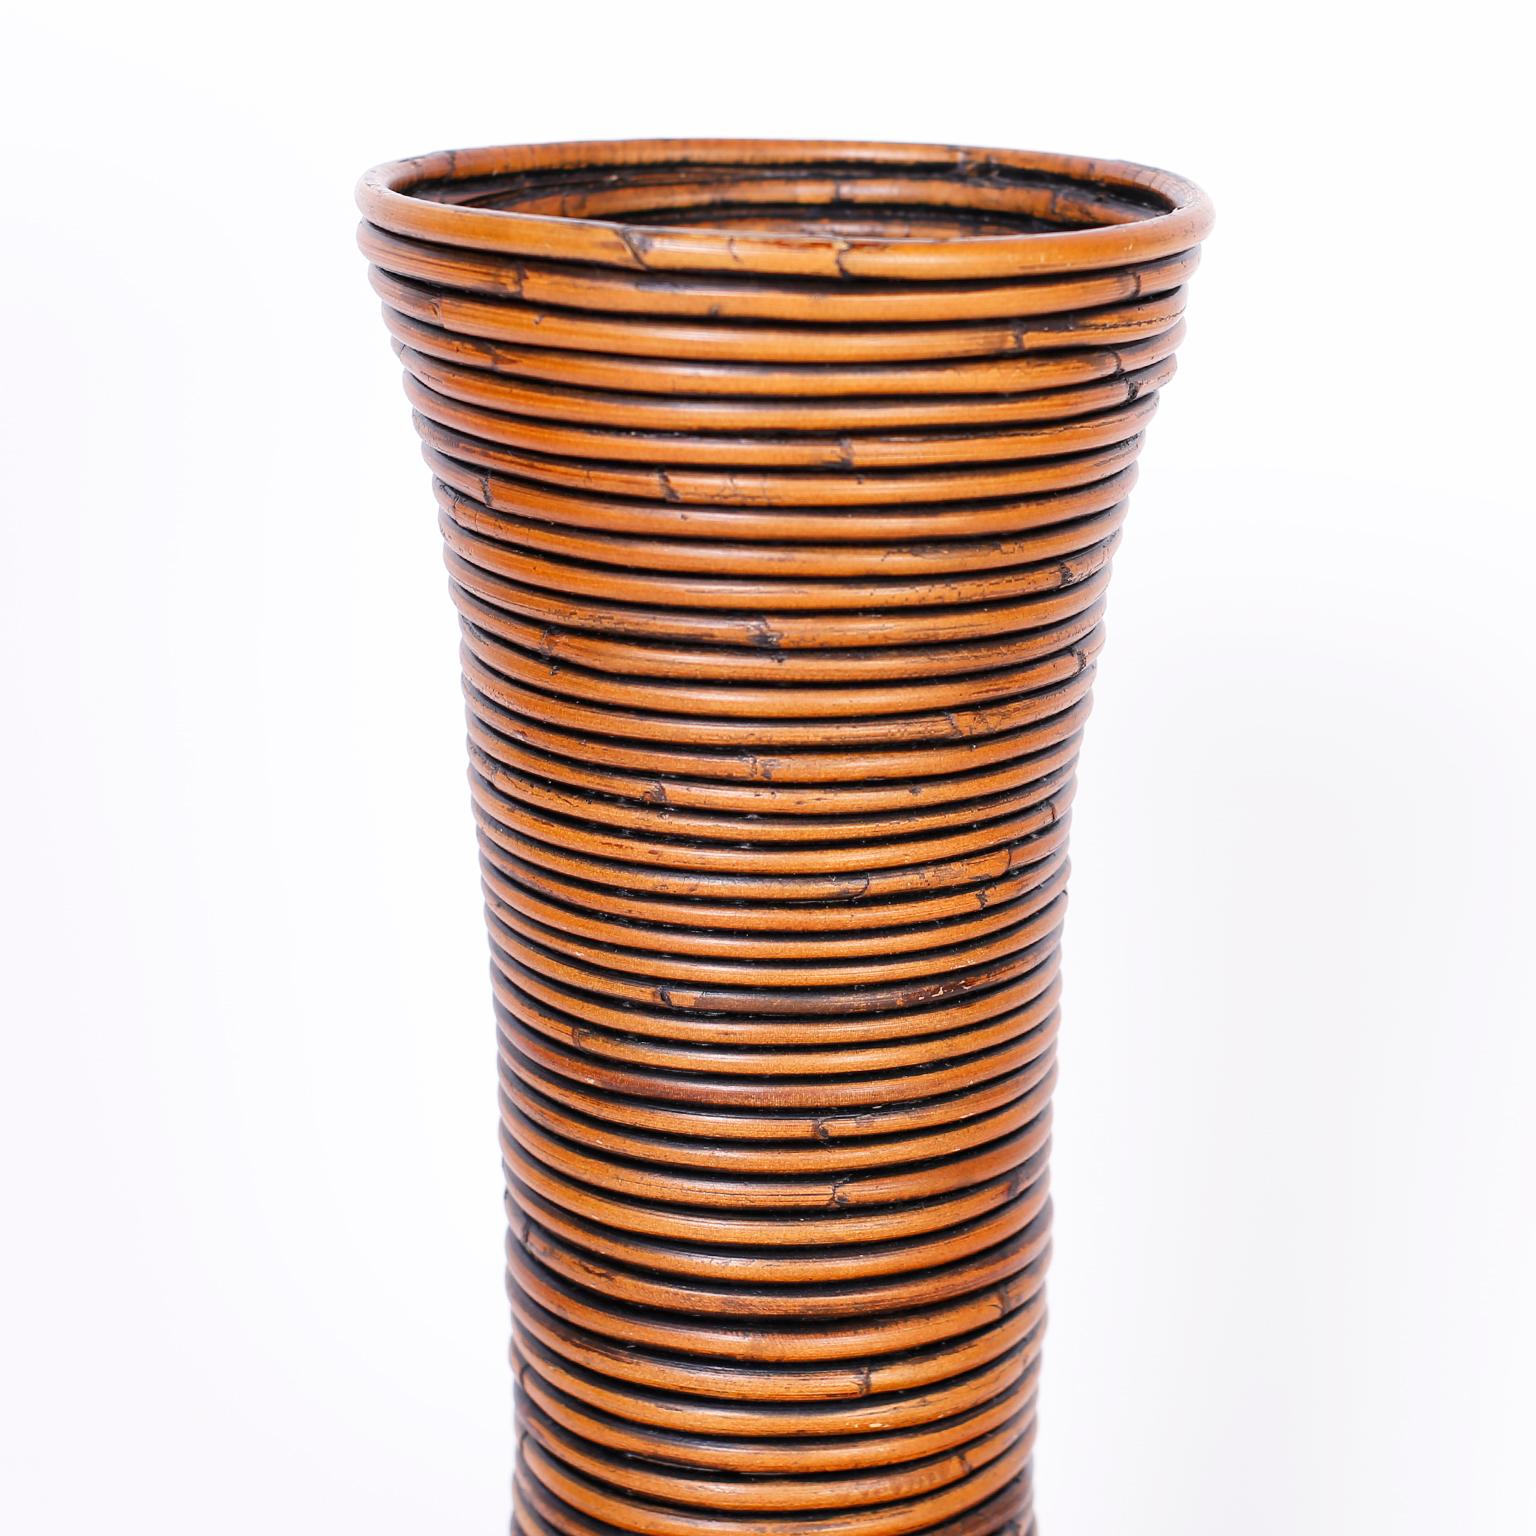 pencil vase